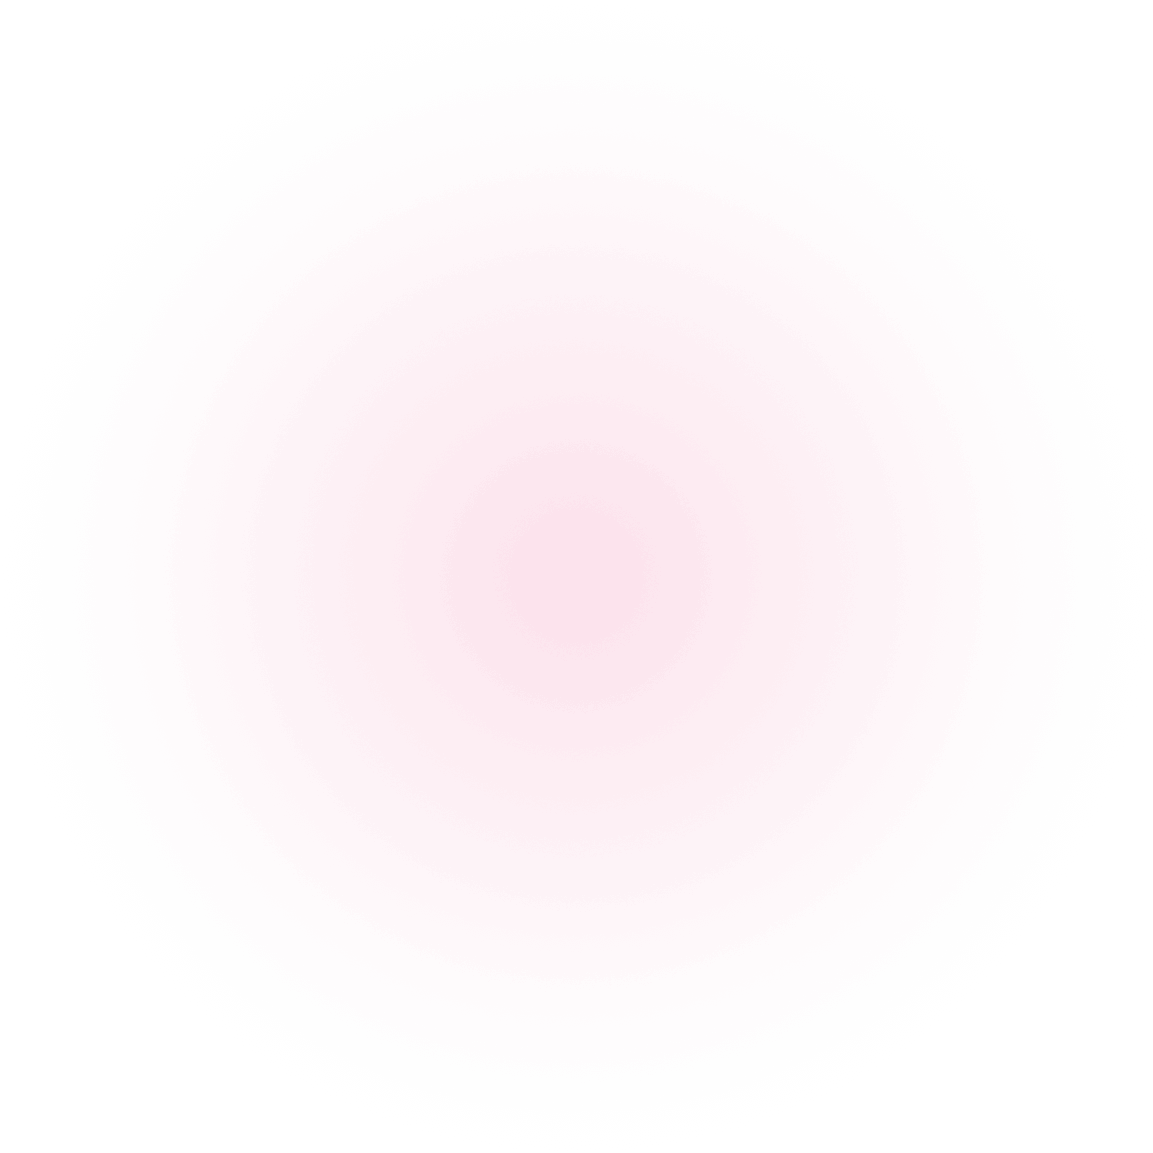 blurred_pink_spot